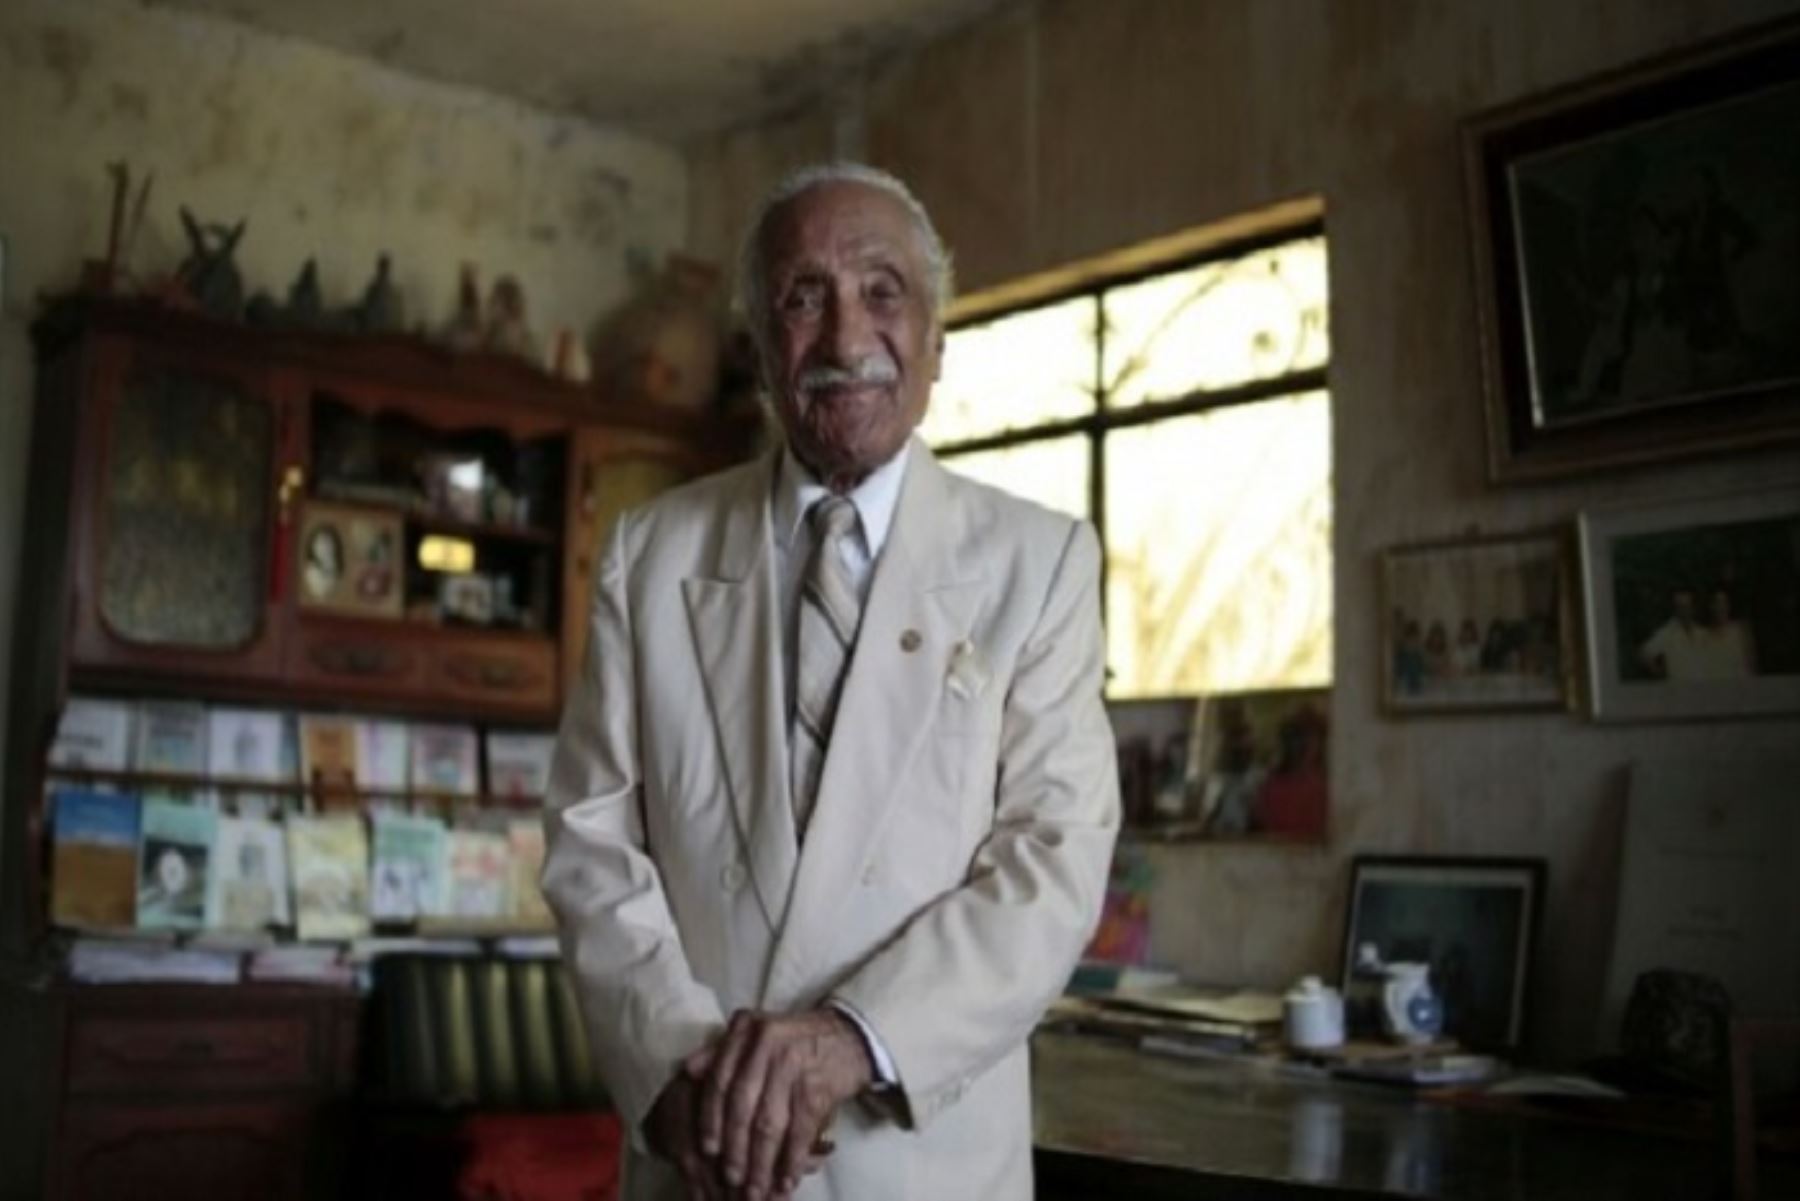 Leoncio Bueno Barrantes, de 103 años, trabajó desde temprana edad en labores agrícolas y se acercó a la literatura influenciado por los trabajadores de la hacienda La Constancia, donde residía.